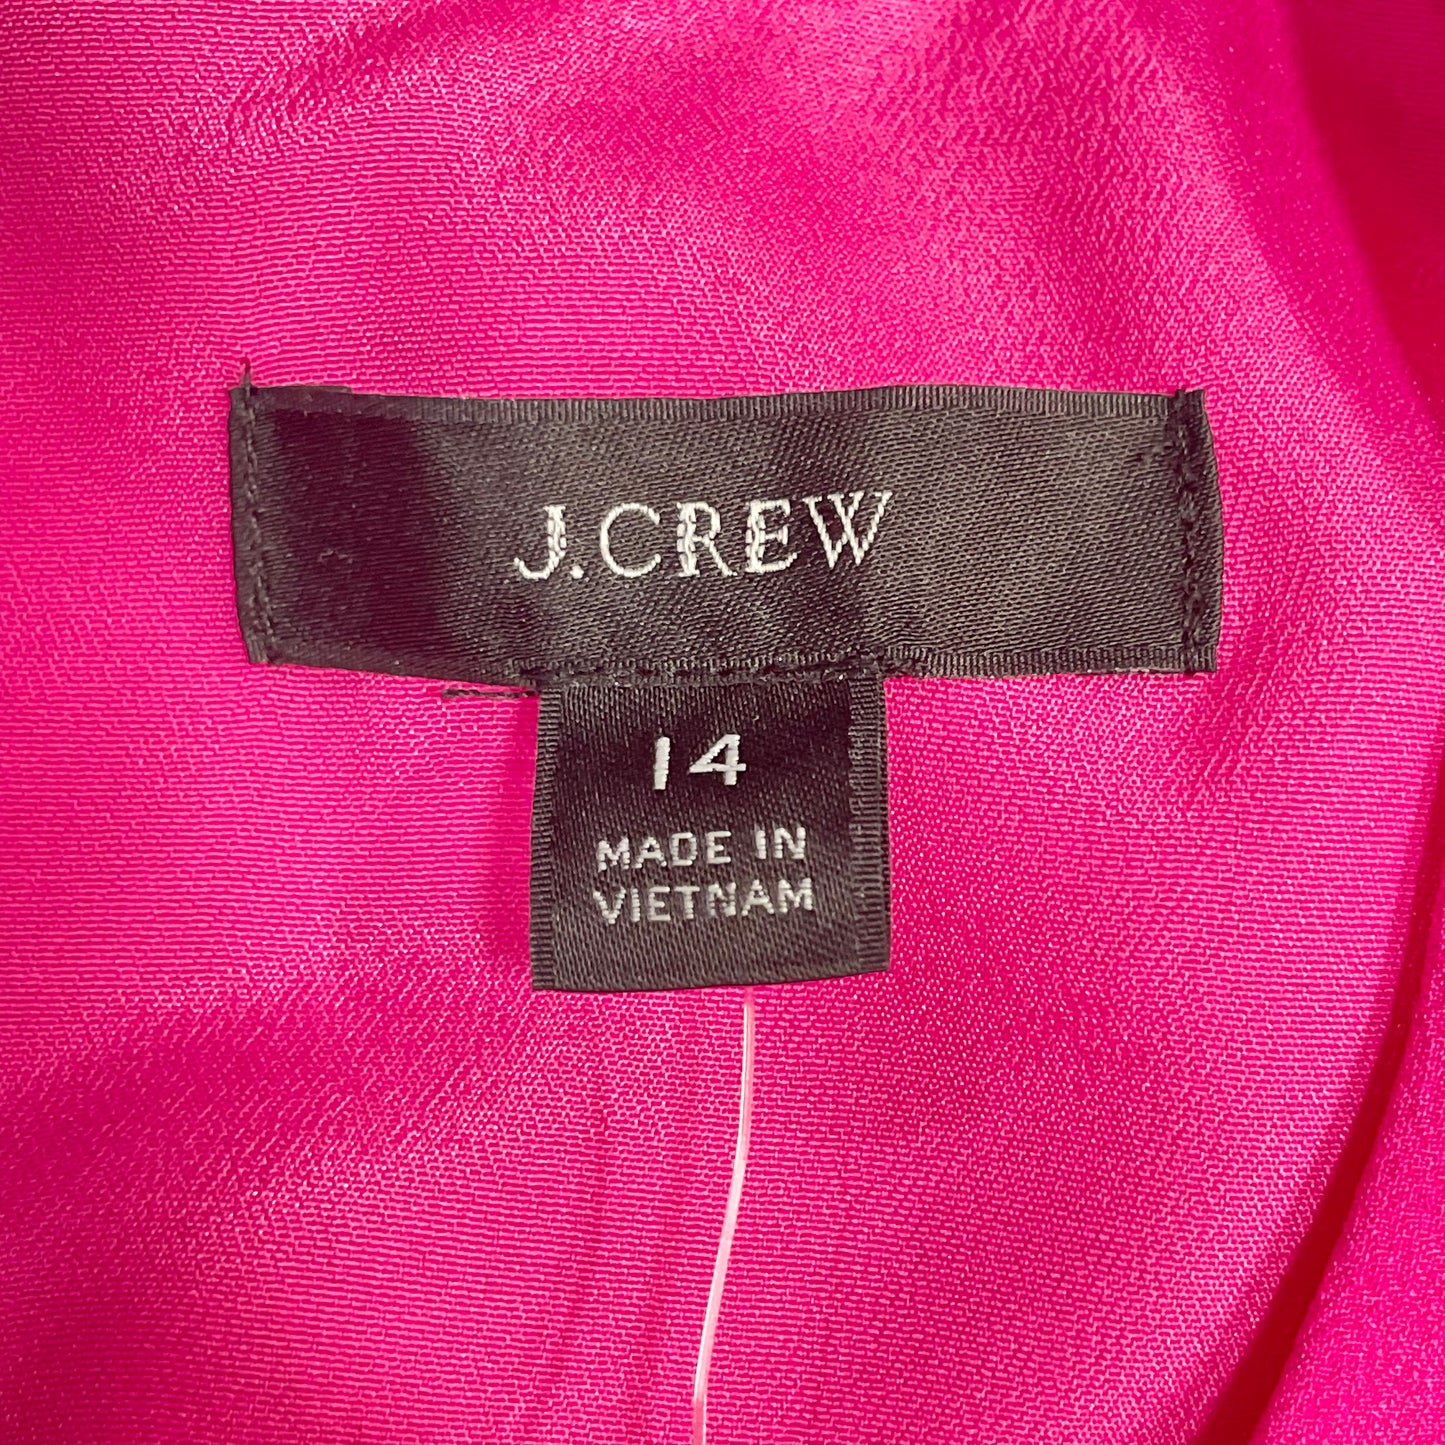 Dress Casual Midi By J. Crew  Size: 14